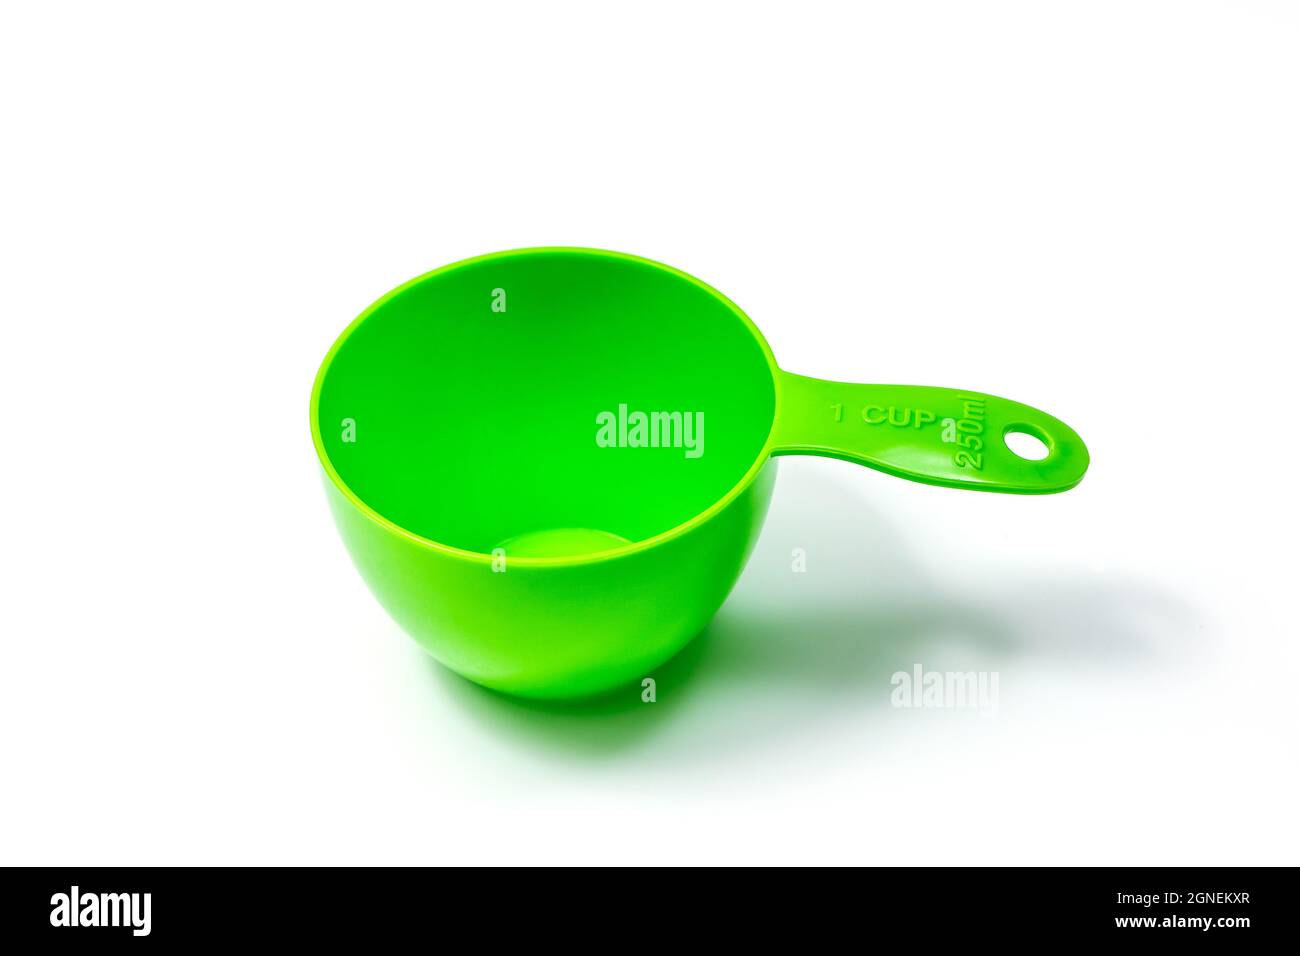 Misurino o cucchiaio per ingredienti verdi - misura completa. Isolato su sfondo bianco con tracciato di ritaglio Foto Stock